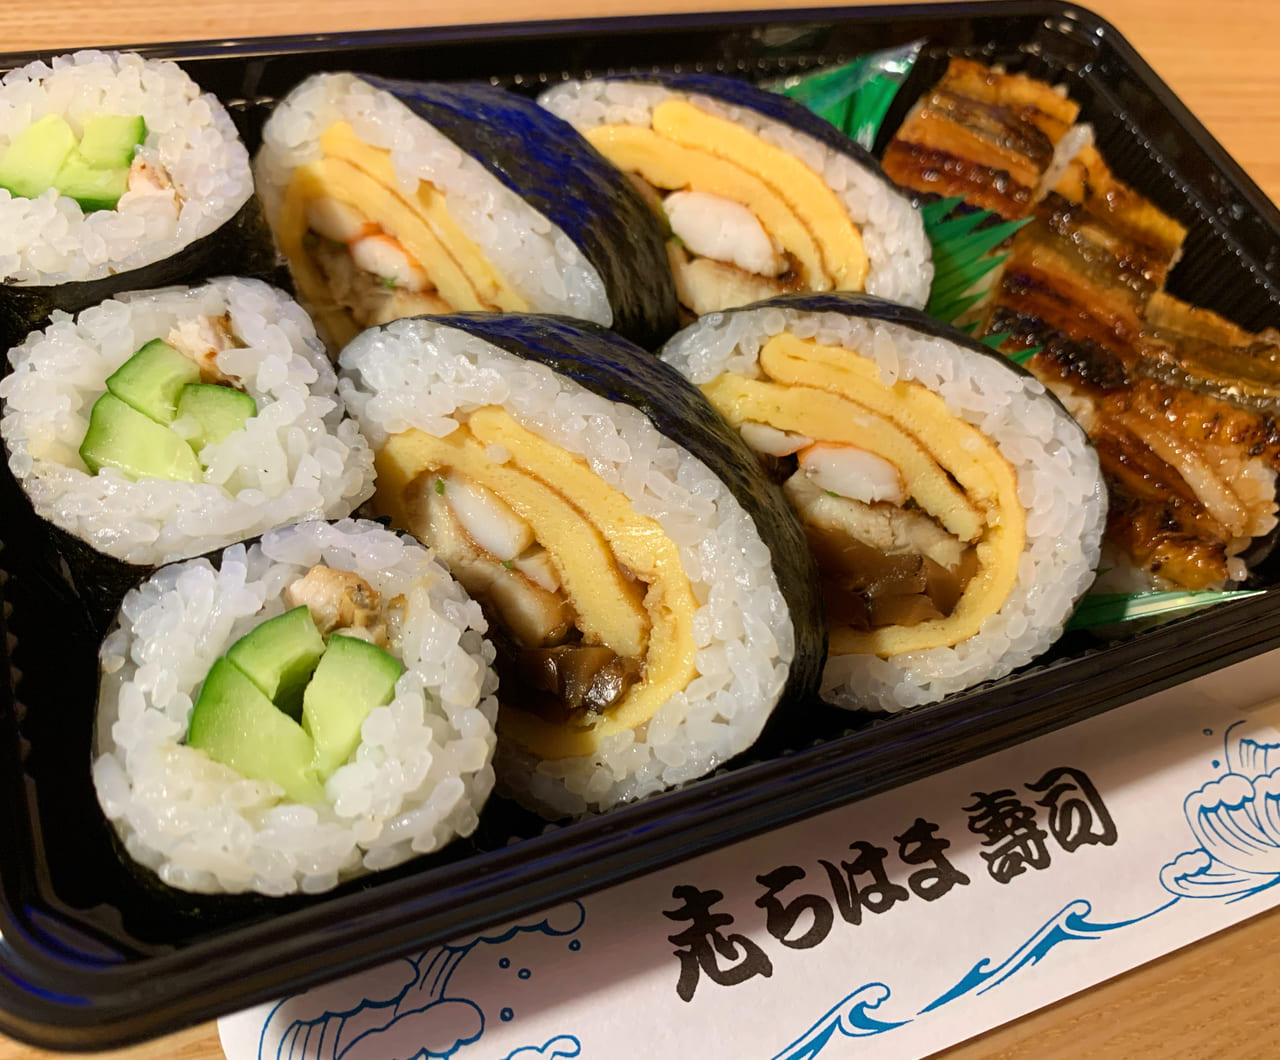 神戸市垂水区 須磨区 志らはま鮨 寿司 の穴子と巻き寿司が 格別 と評判 持ち帰りできます 号外net 神戸市垂水区 須磨区